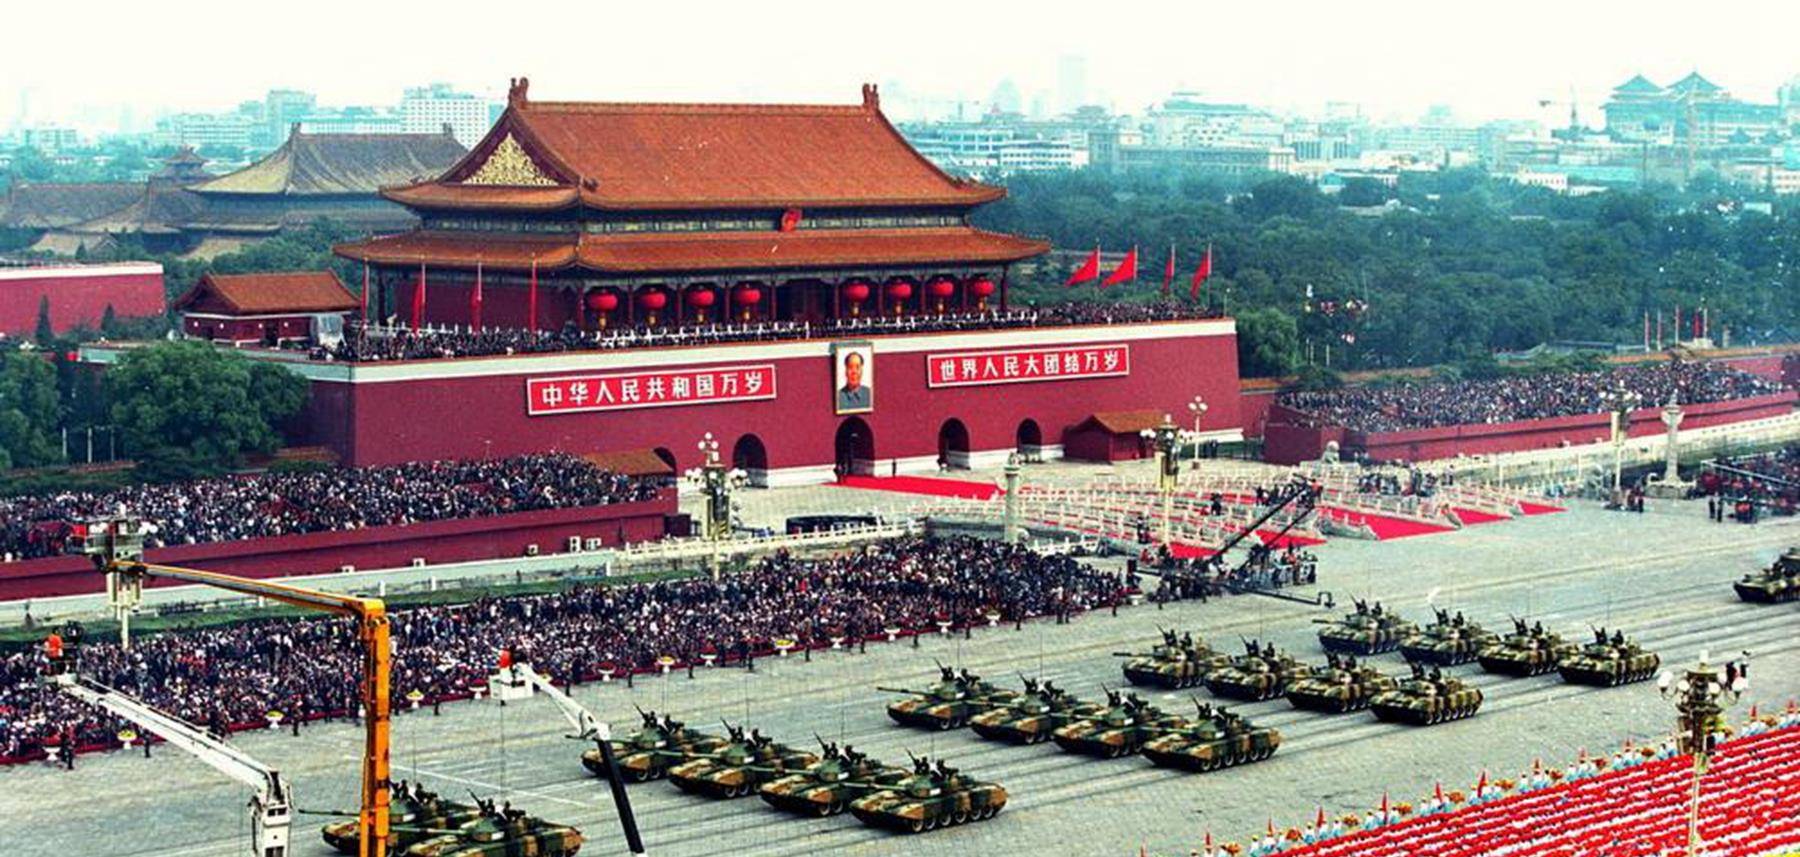 2019年的中国大阅兵,将展现史无前例的最强悍阵容